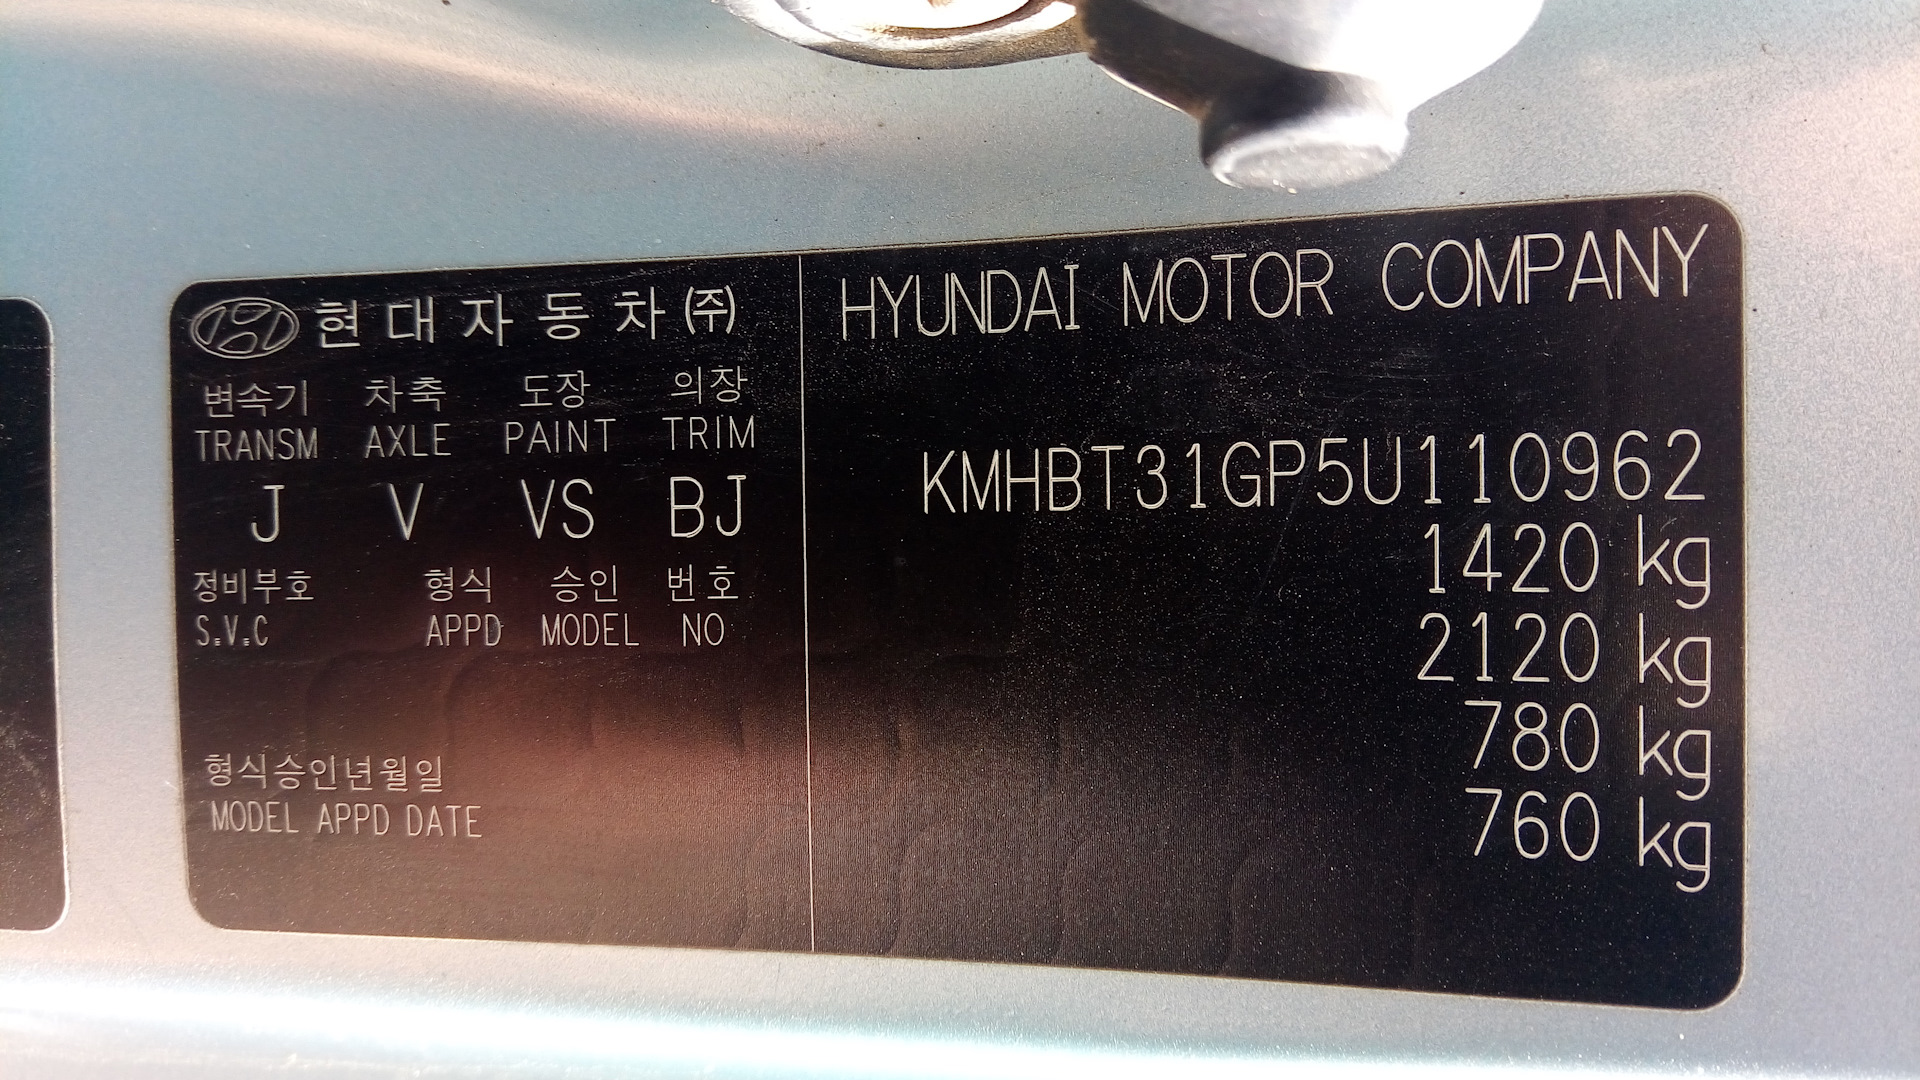 Vin номер honda. Honda CR-V табличка VIN. Табличка с вин номером на Хонда джаз 2008. Табличка VIN Nissan Patrol y60. Табличка Honda CR-v1.